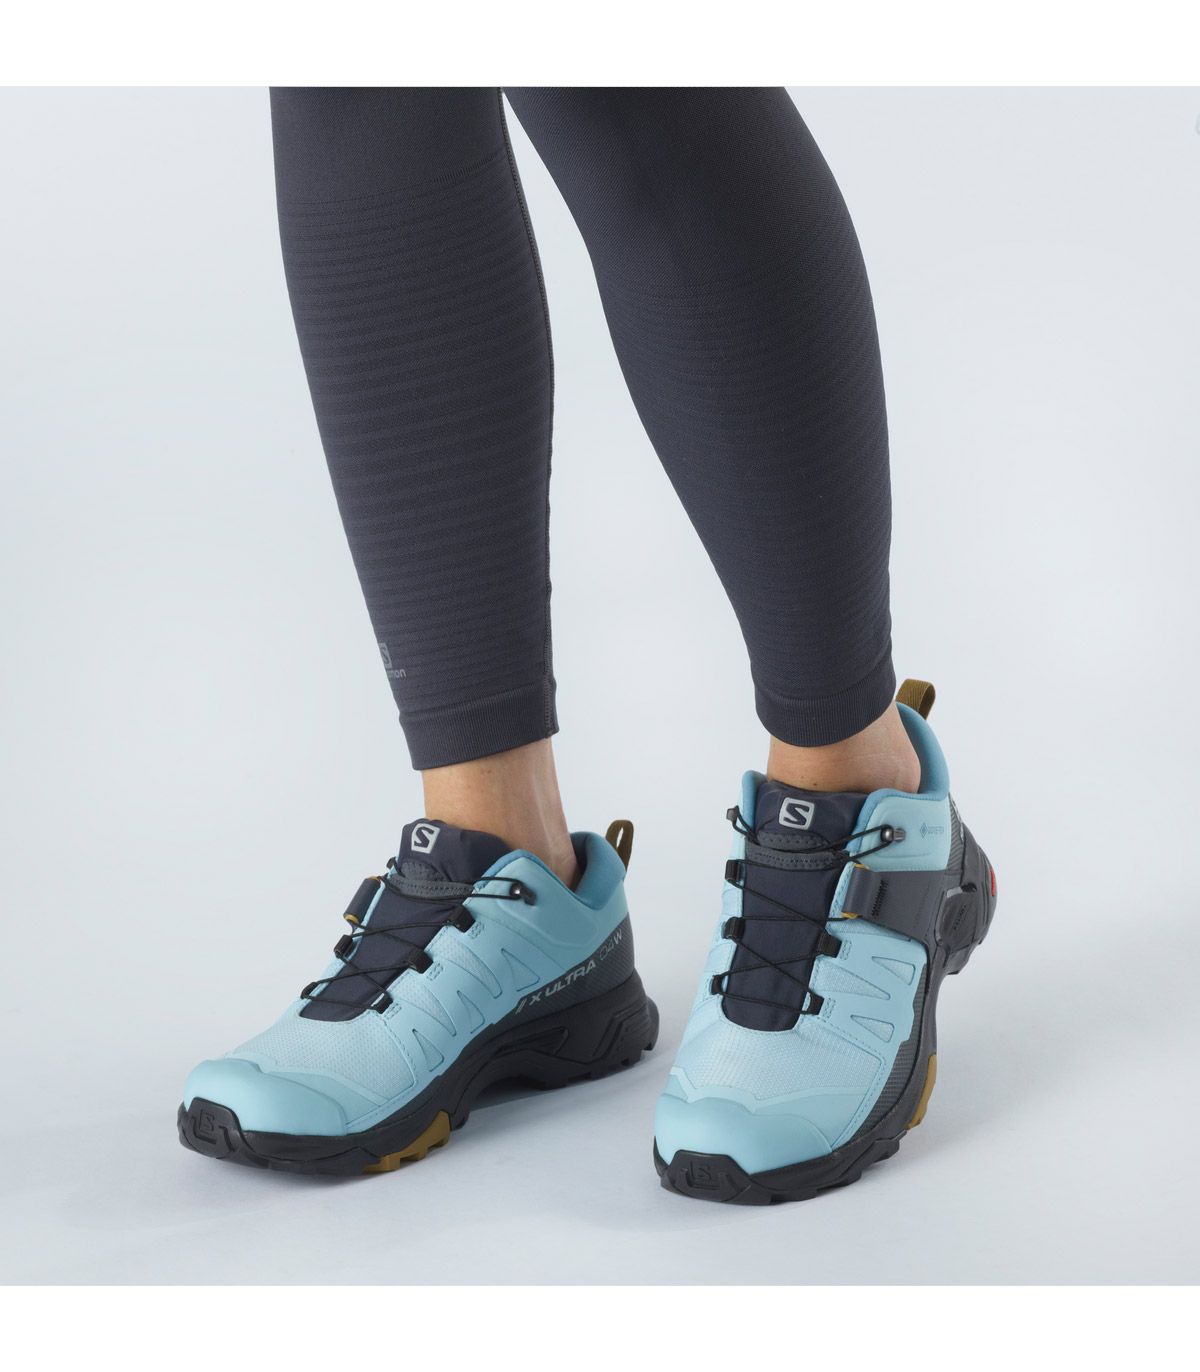 Compra Zapatillas deportivas GoreTex Salomon para mujer online baratas